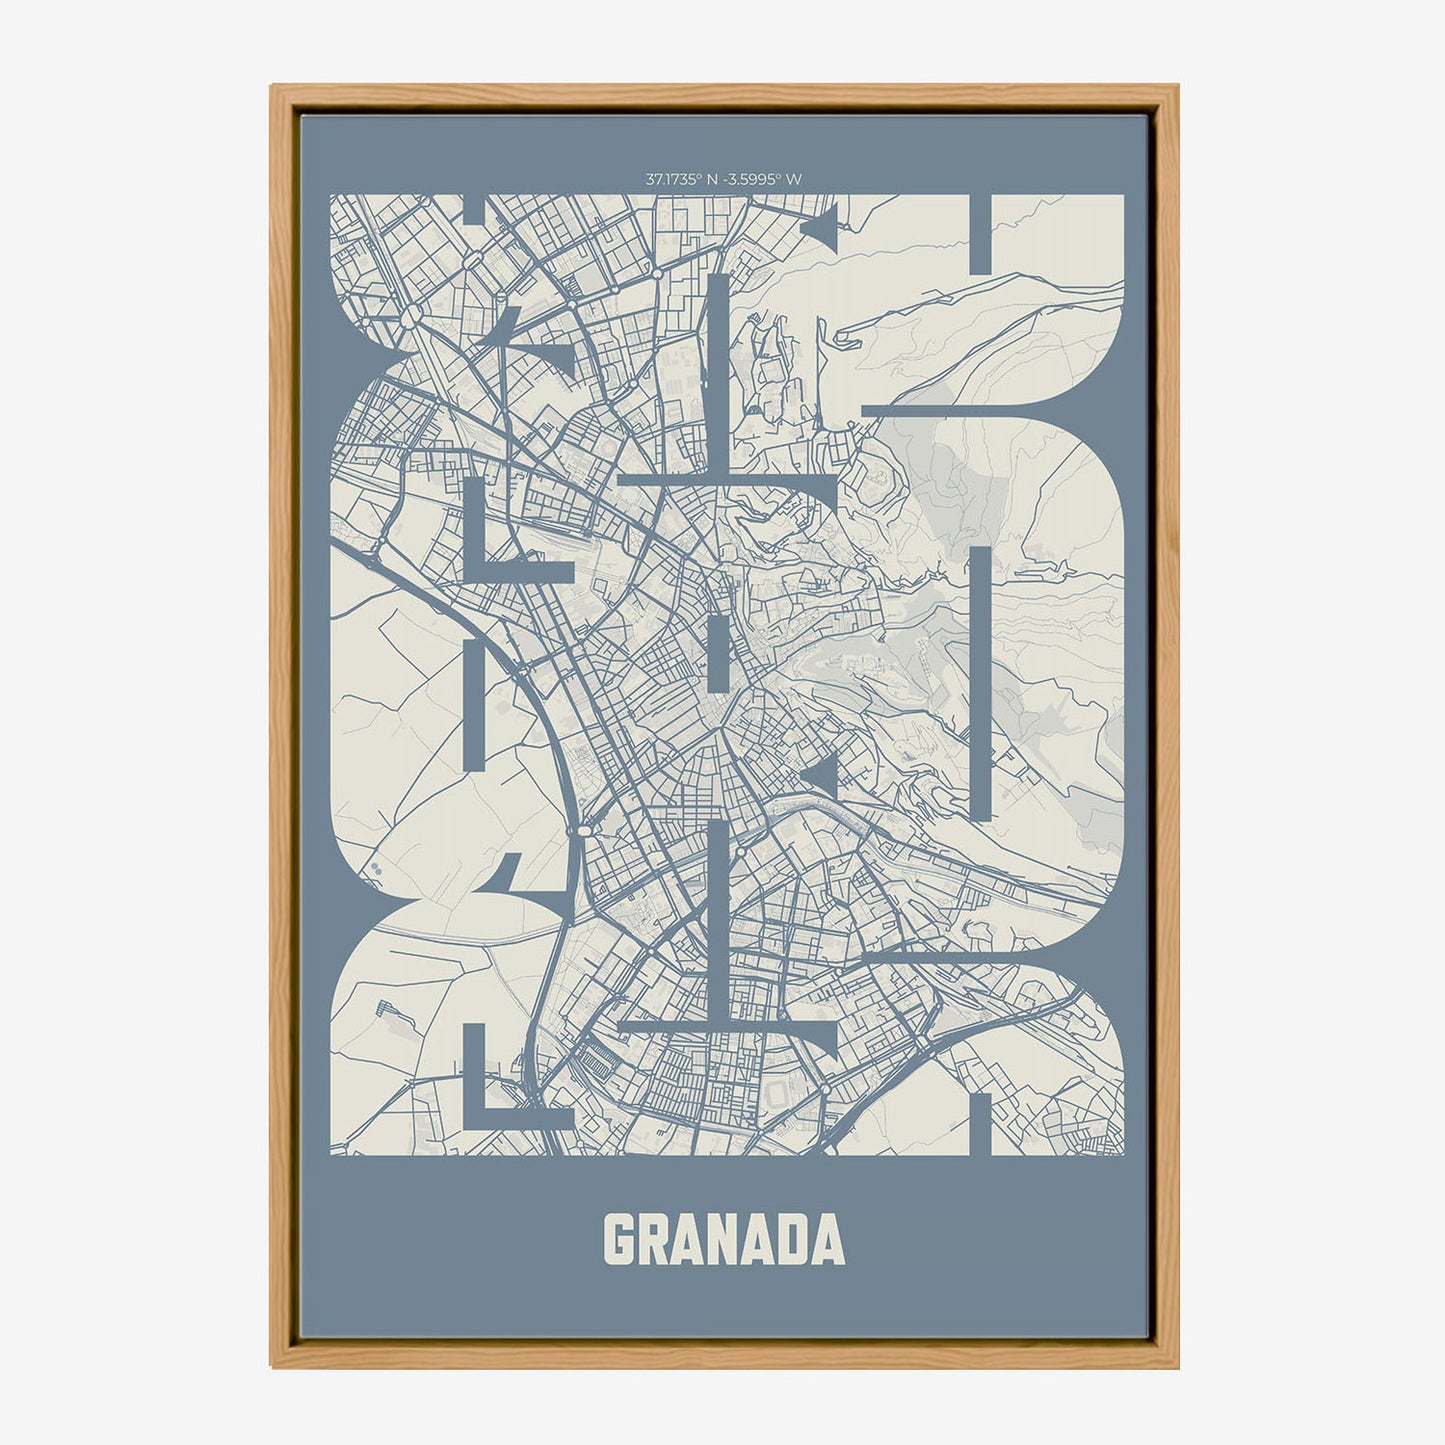 GRD Granada Poster